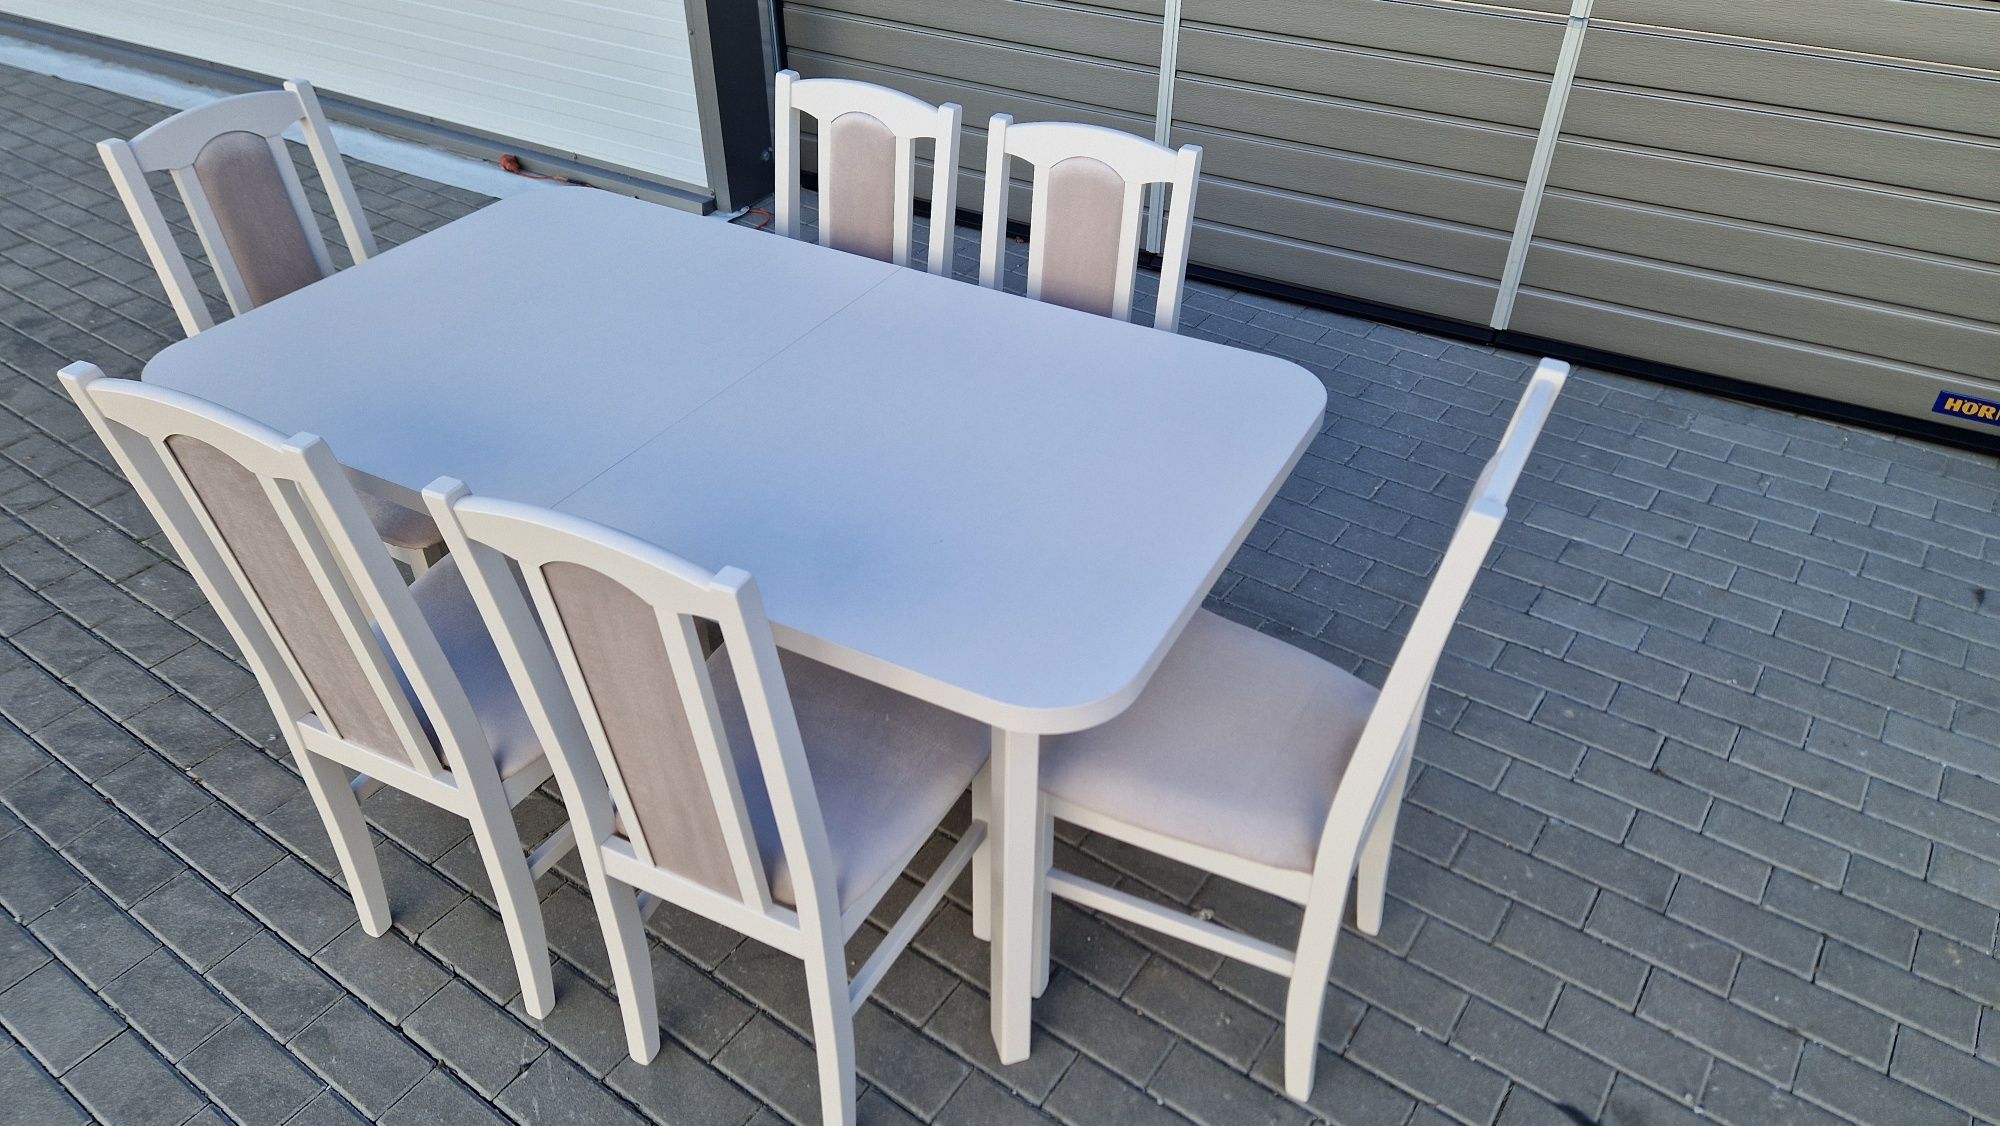 Nowe: Stół 80x140/180 + 6 krzeseł, KASZMIR + LATTE, dostawa PL